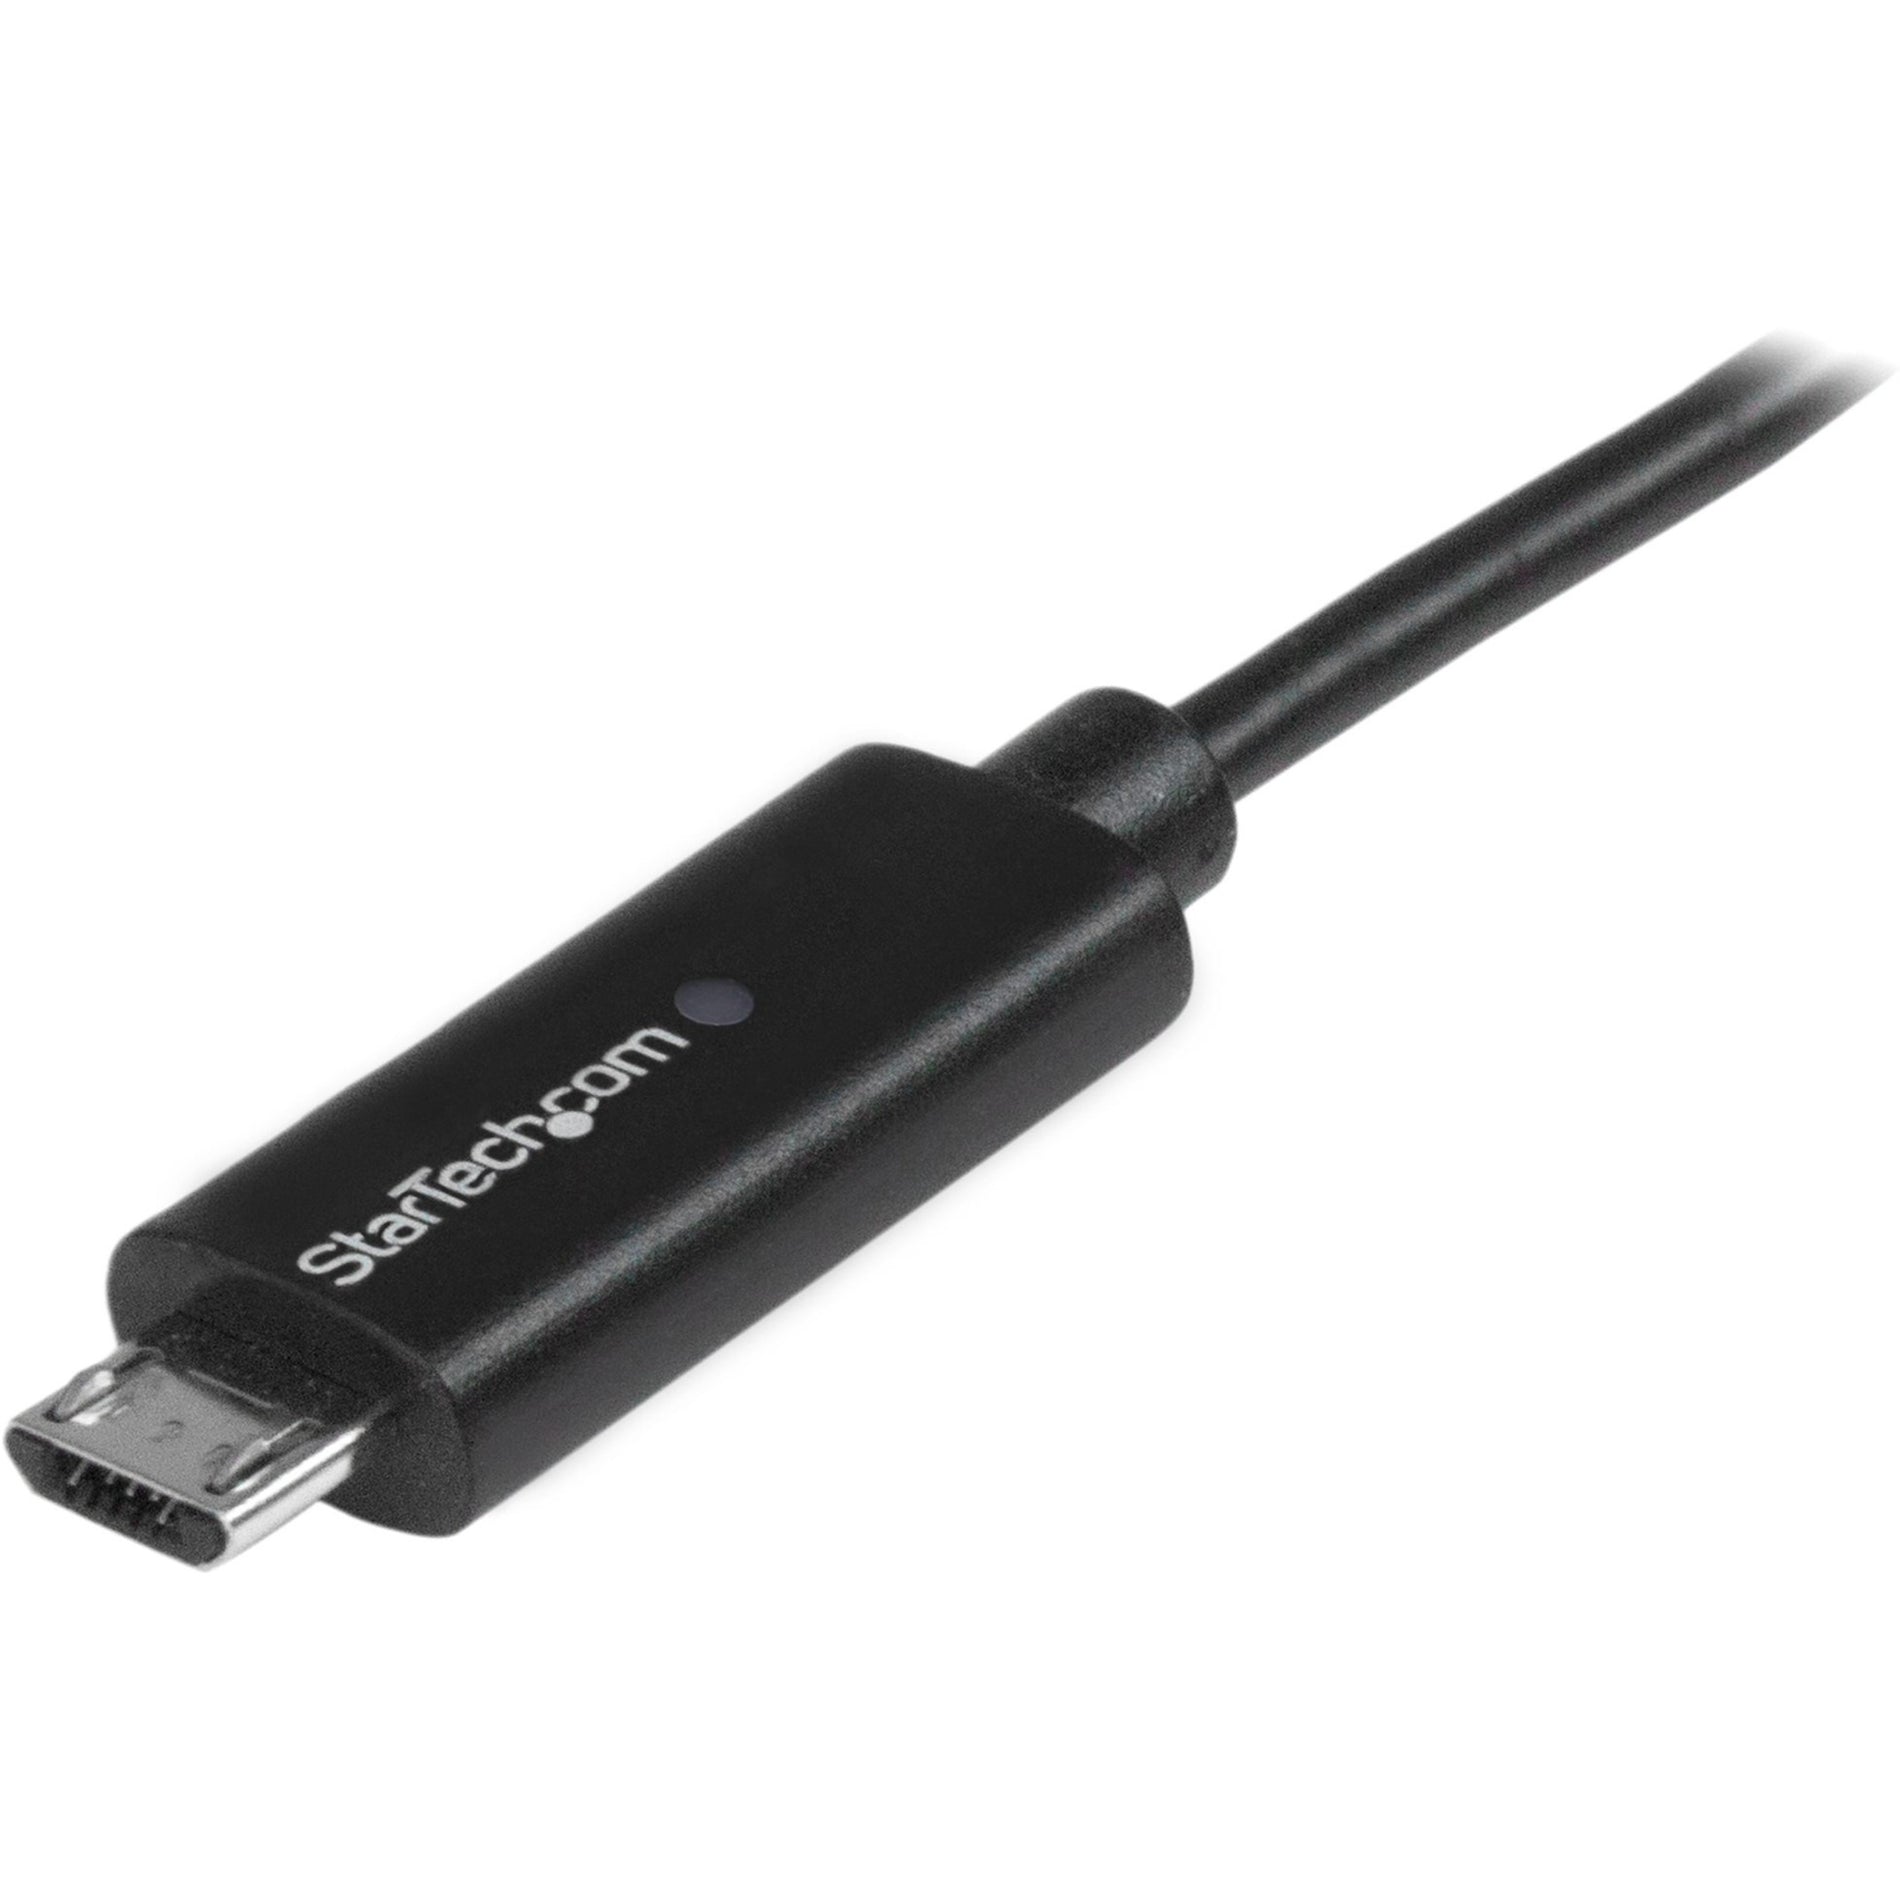 StarTech.com USBAUBL1M 1m 3 ft Micro-USB Kabel mit LED Ladeleuchte USB auf Micro USB Kabel mit Schnellladung und LED Anzeige [Eingestellt]